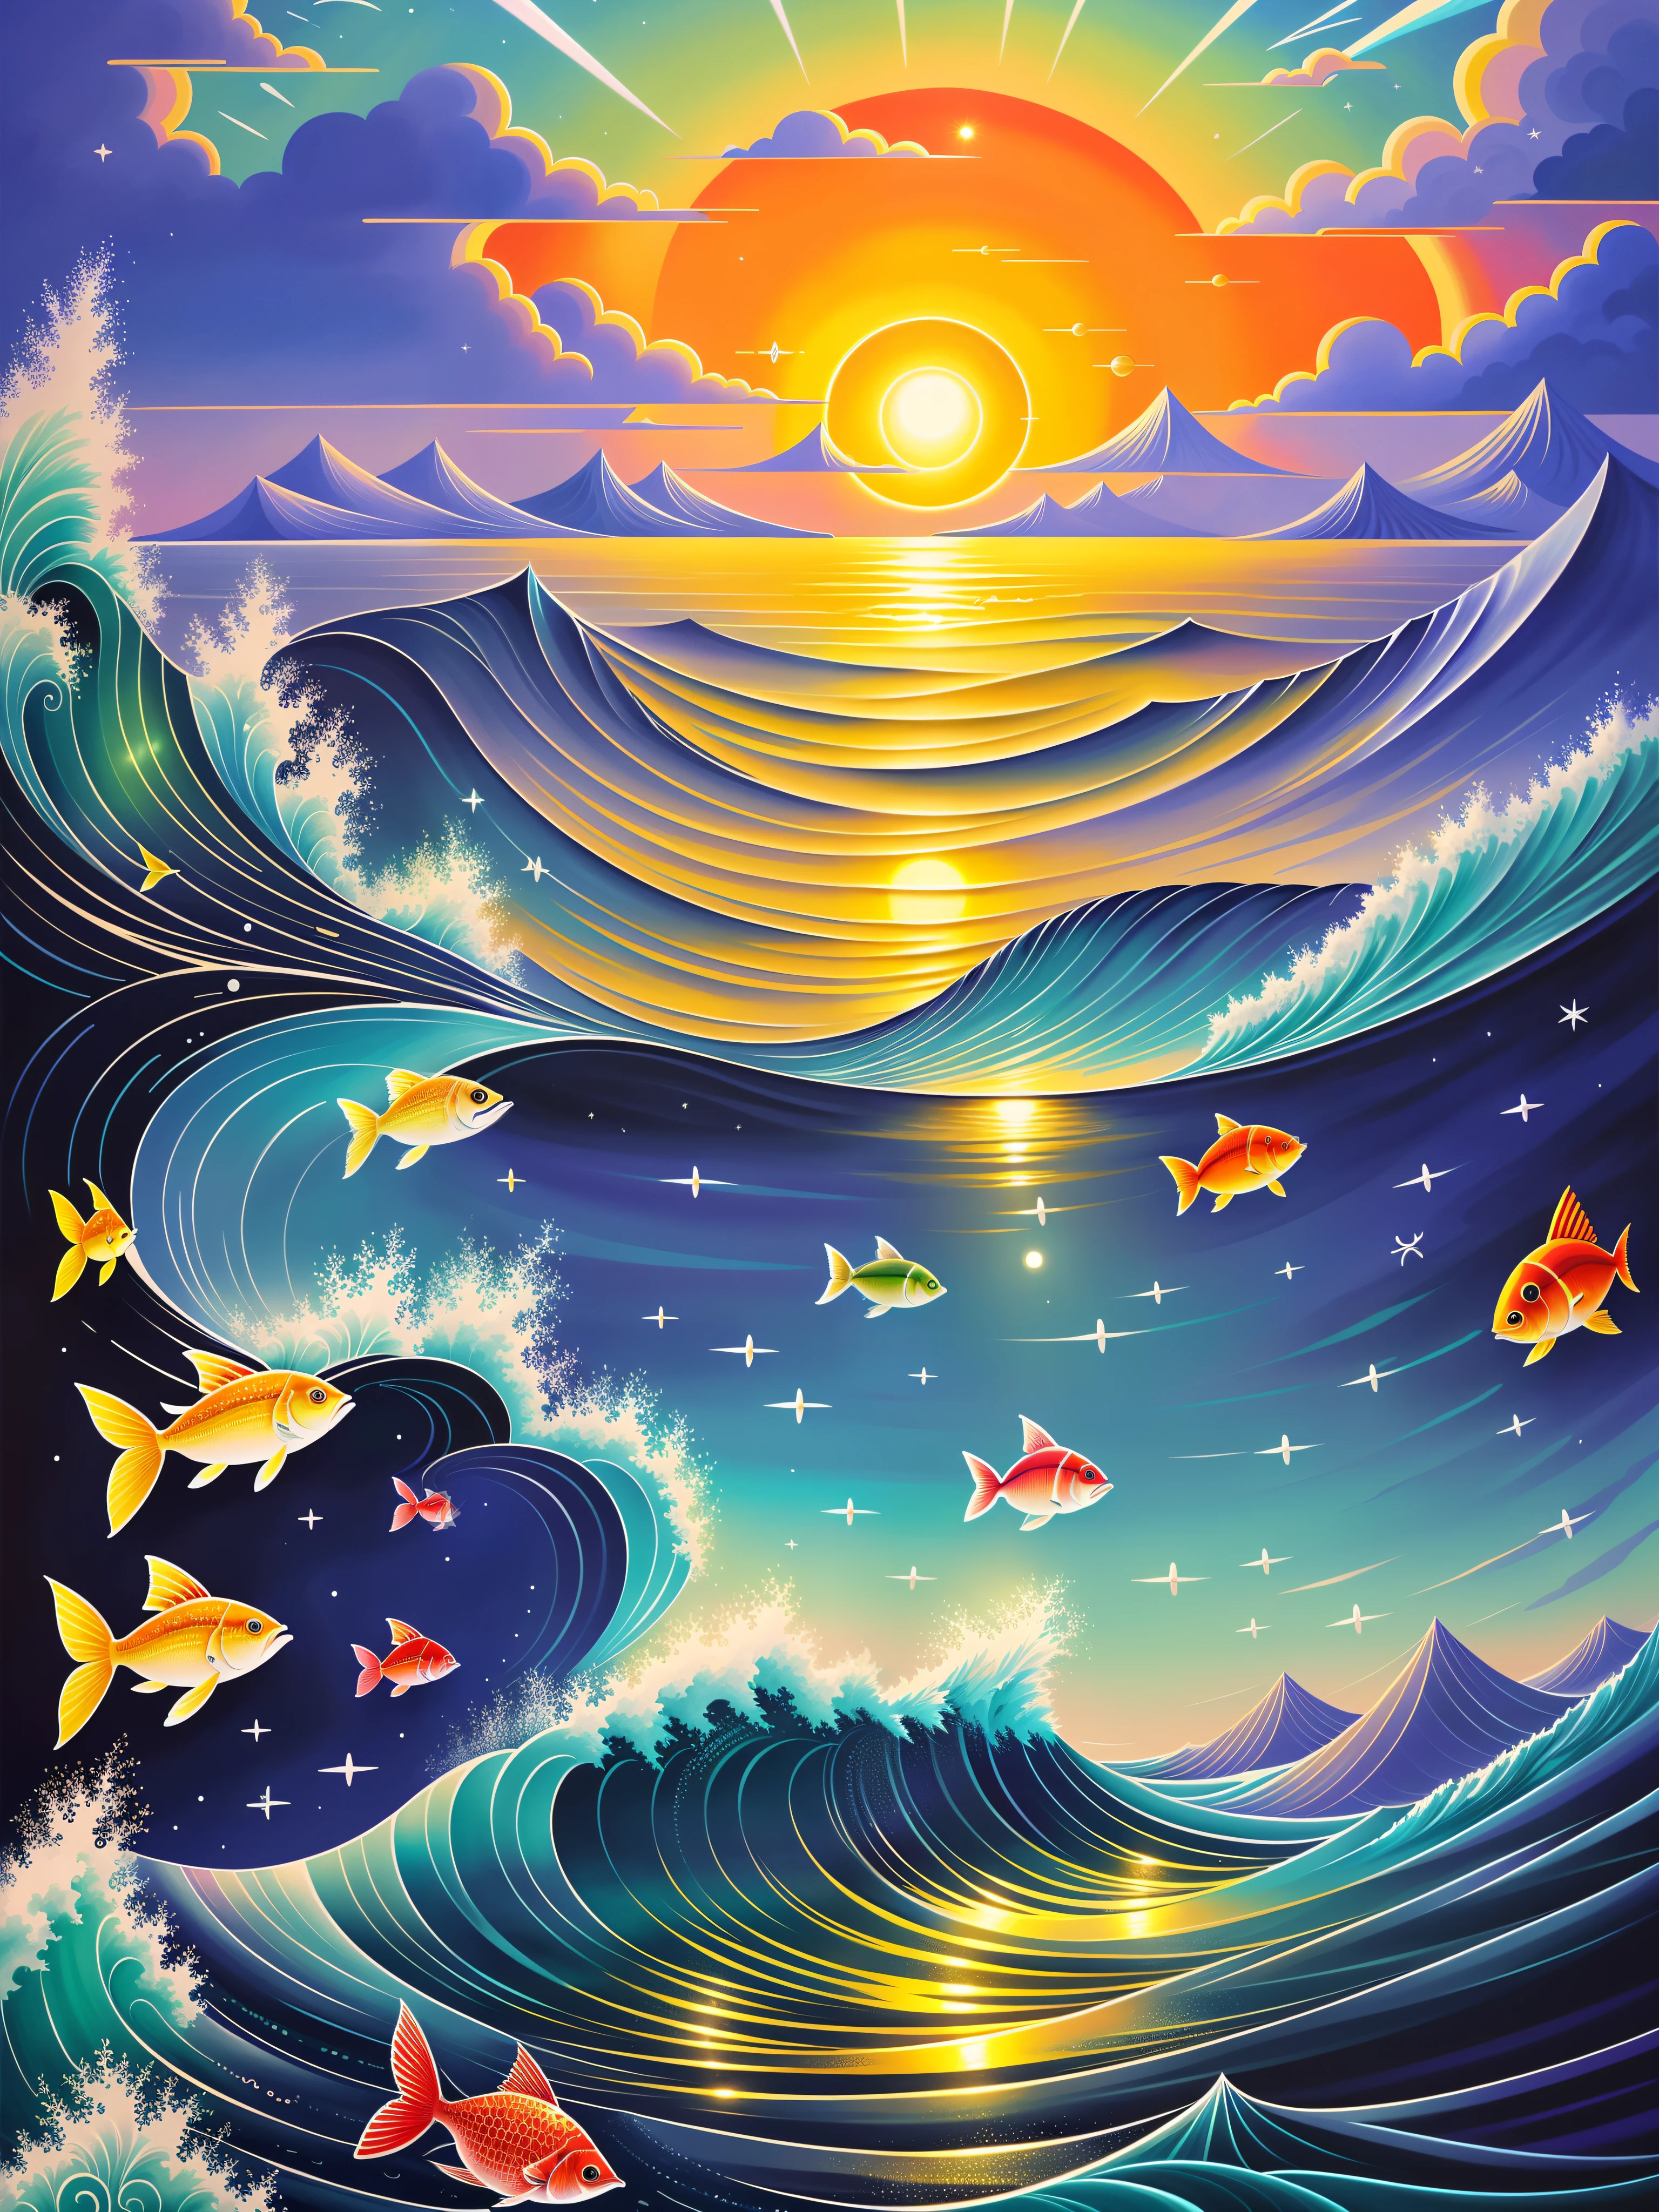 태양과 물고기의 다채로운 그림이 있는 바다 장면, （（（보름달））），많은 물고기，그냥 농담이야, 아름다운 삽화 그림, 마법의 바다, 시릴 롤란도에게서 영감을 받은 작품, 환상의 바다 풍경, 아름다운 예술 UHD 8 K, 매우 상세한 디지털 페인팅, 시릴 롤란도 스타일로, 8K의 매우 상세한 디지털 아트, 상세한 꿈의 풍경, 다채로운 평면 초현실적 인 미묘한, 혼란스러운 바다 환경